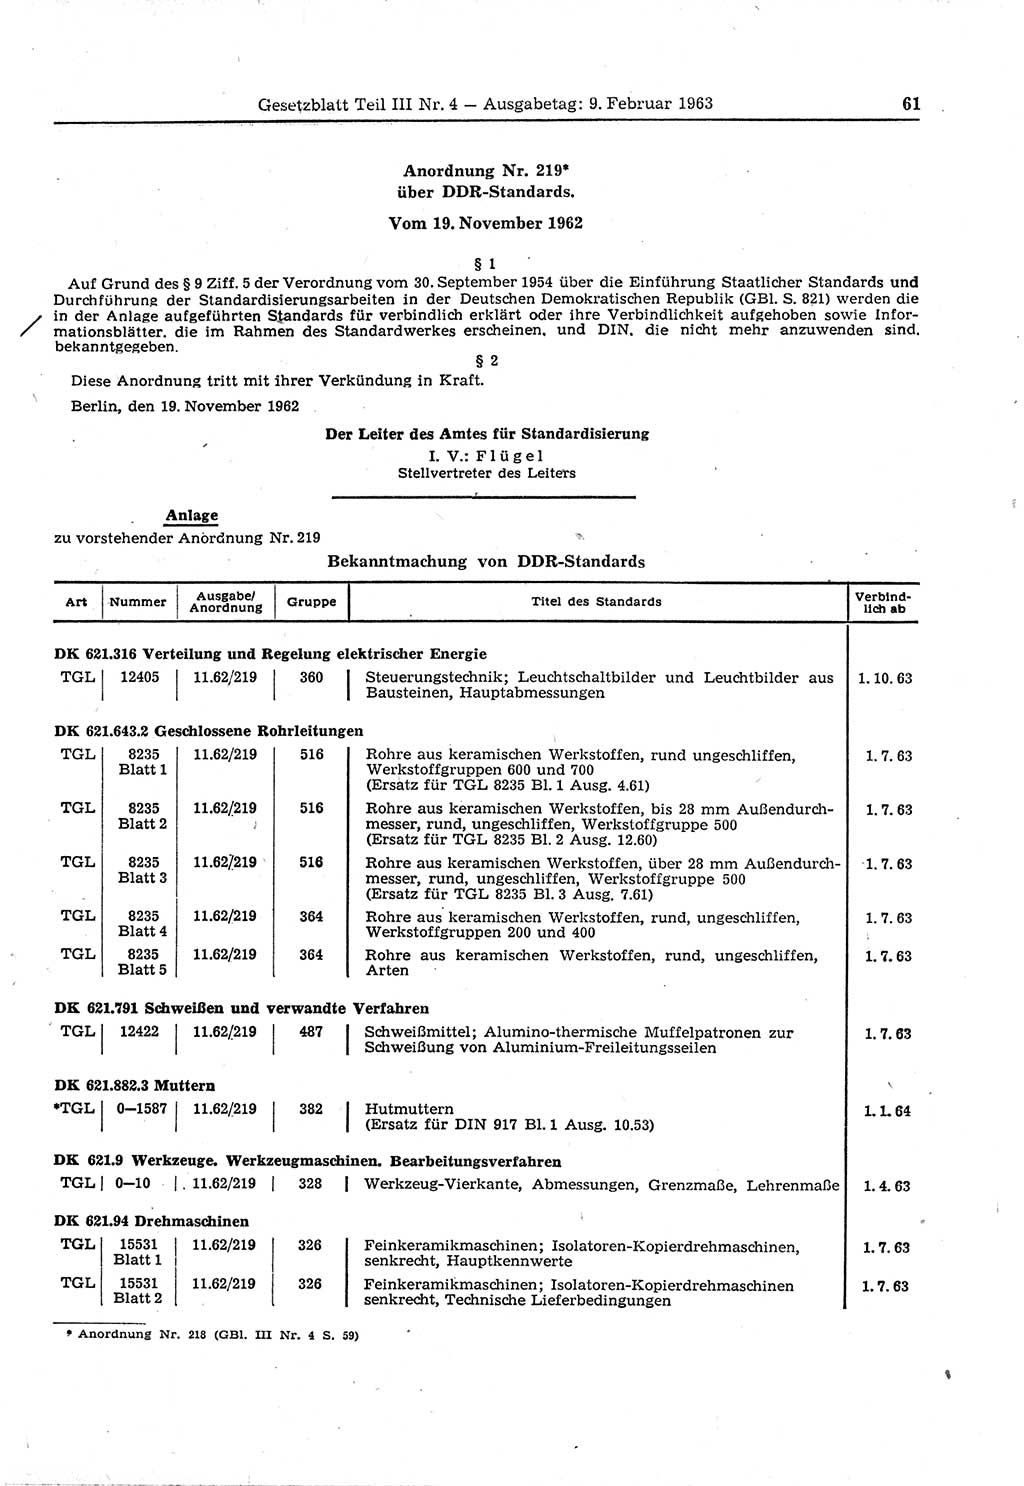 Gesetzblatt (GBl.) der Deutschen Demokratischen Republik (DDR) Teil ⅠⅠⅠ 1963, Seite 61 (GBl. DDR ⅠⅠⅠ 1963, S. 61)